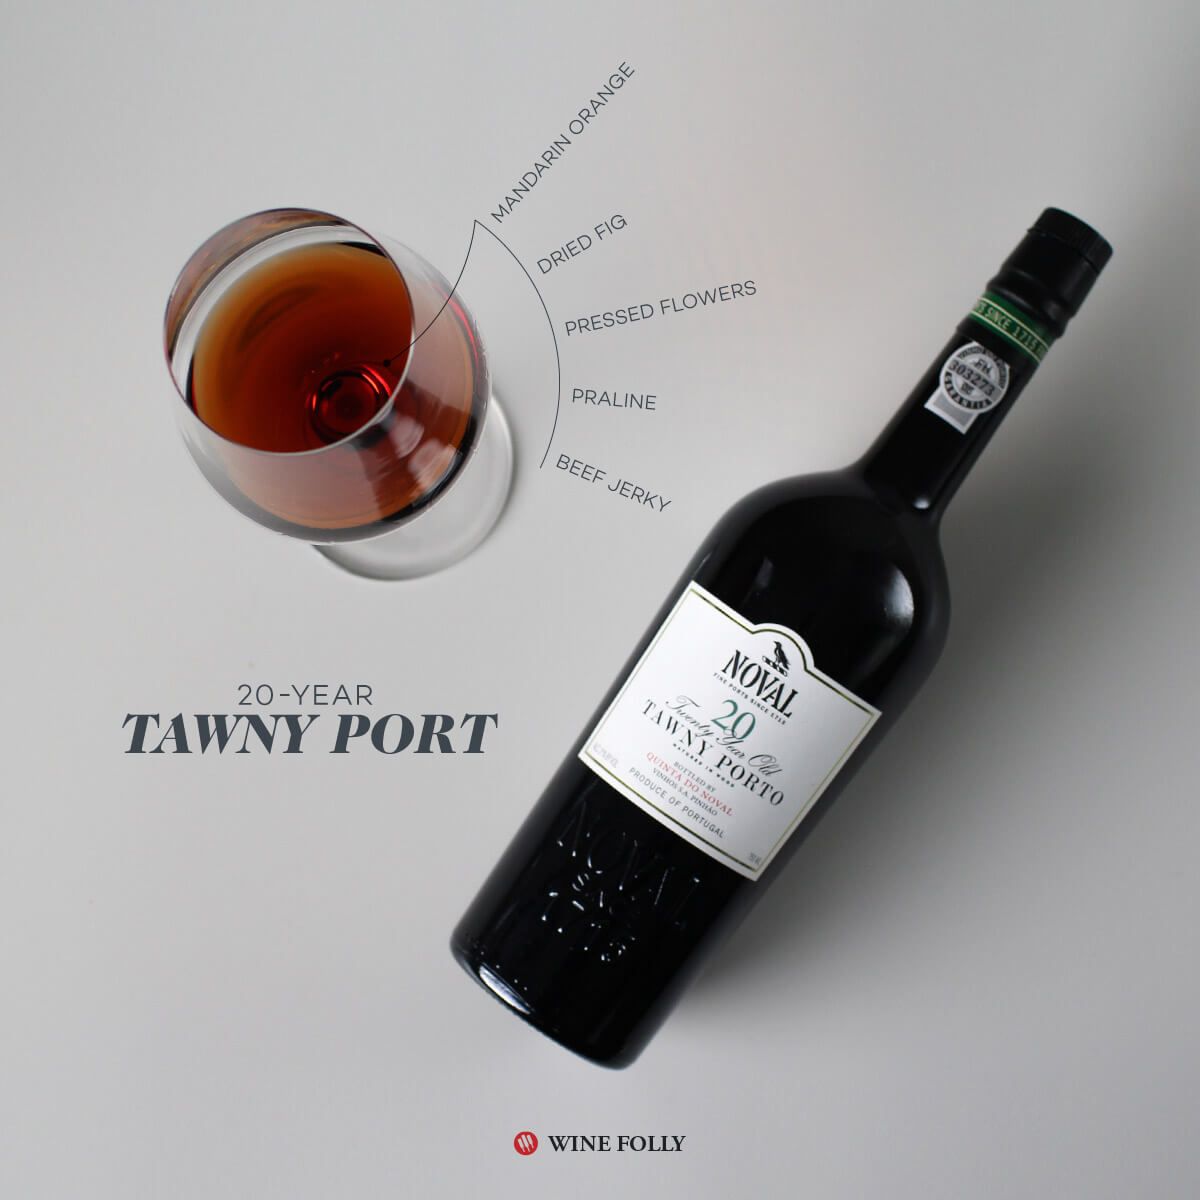 20-tawny-port-quinta-do-noval-winefolly